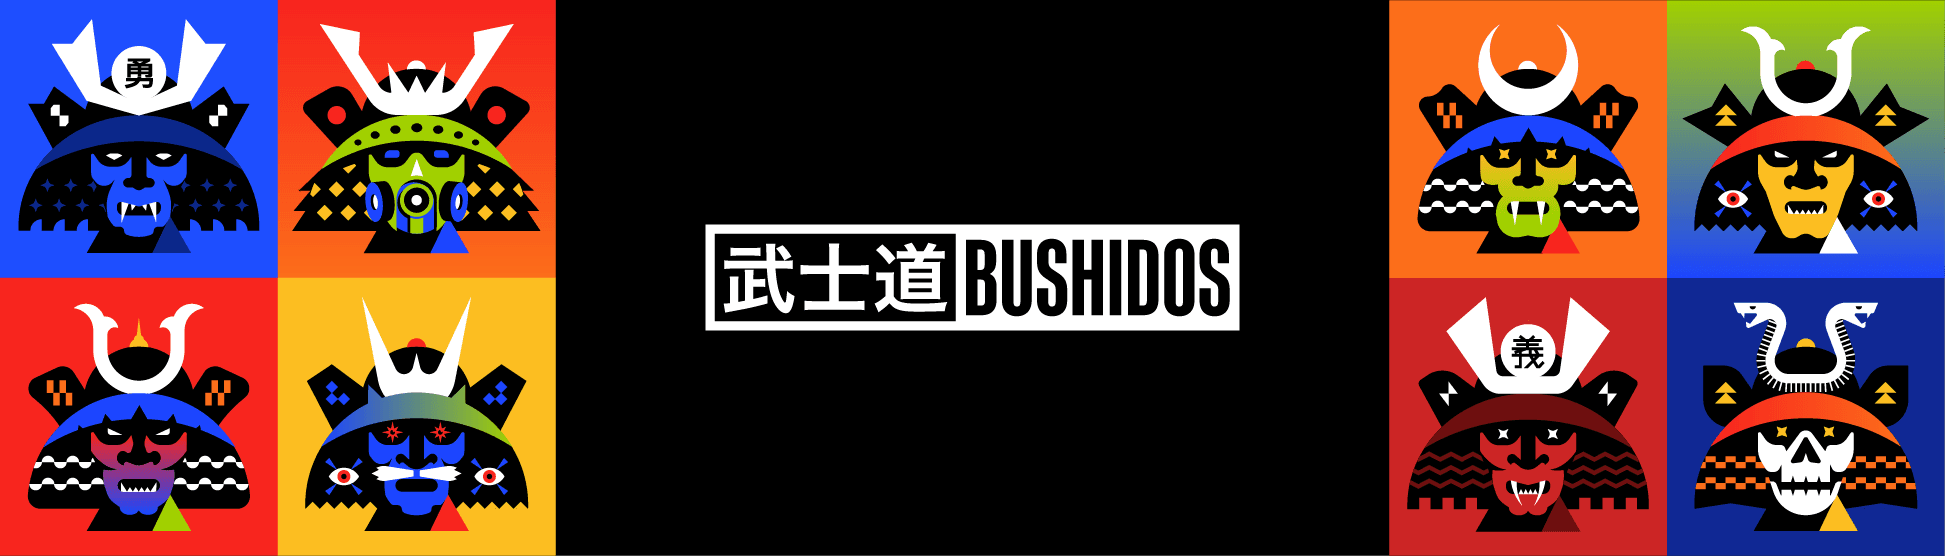 Bushidos